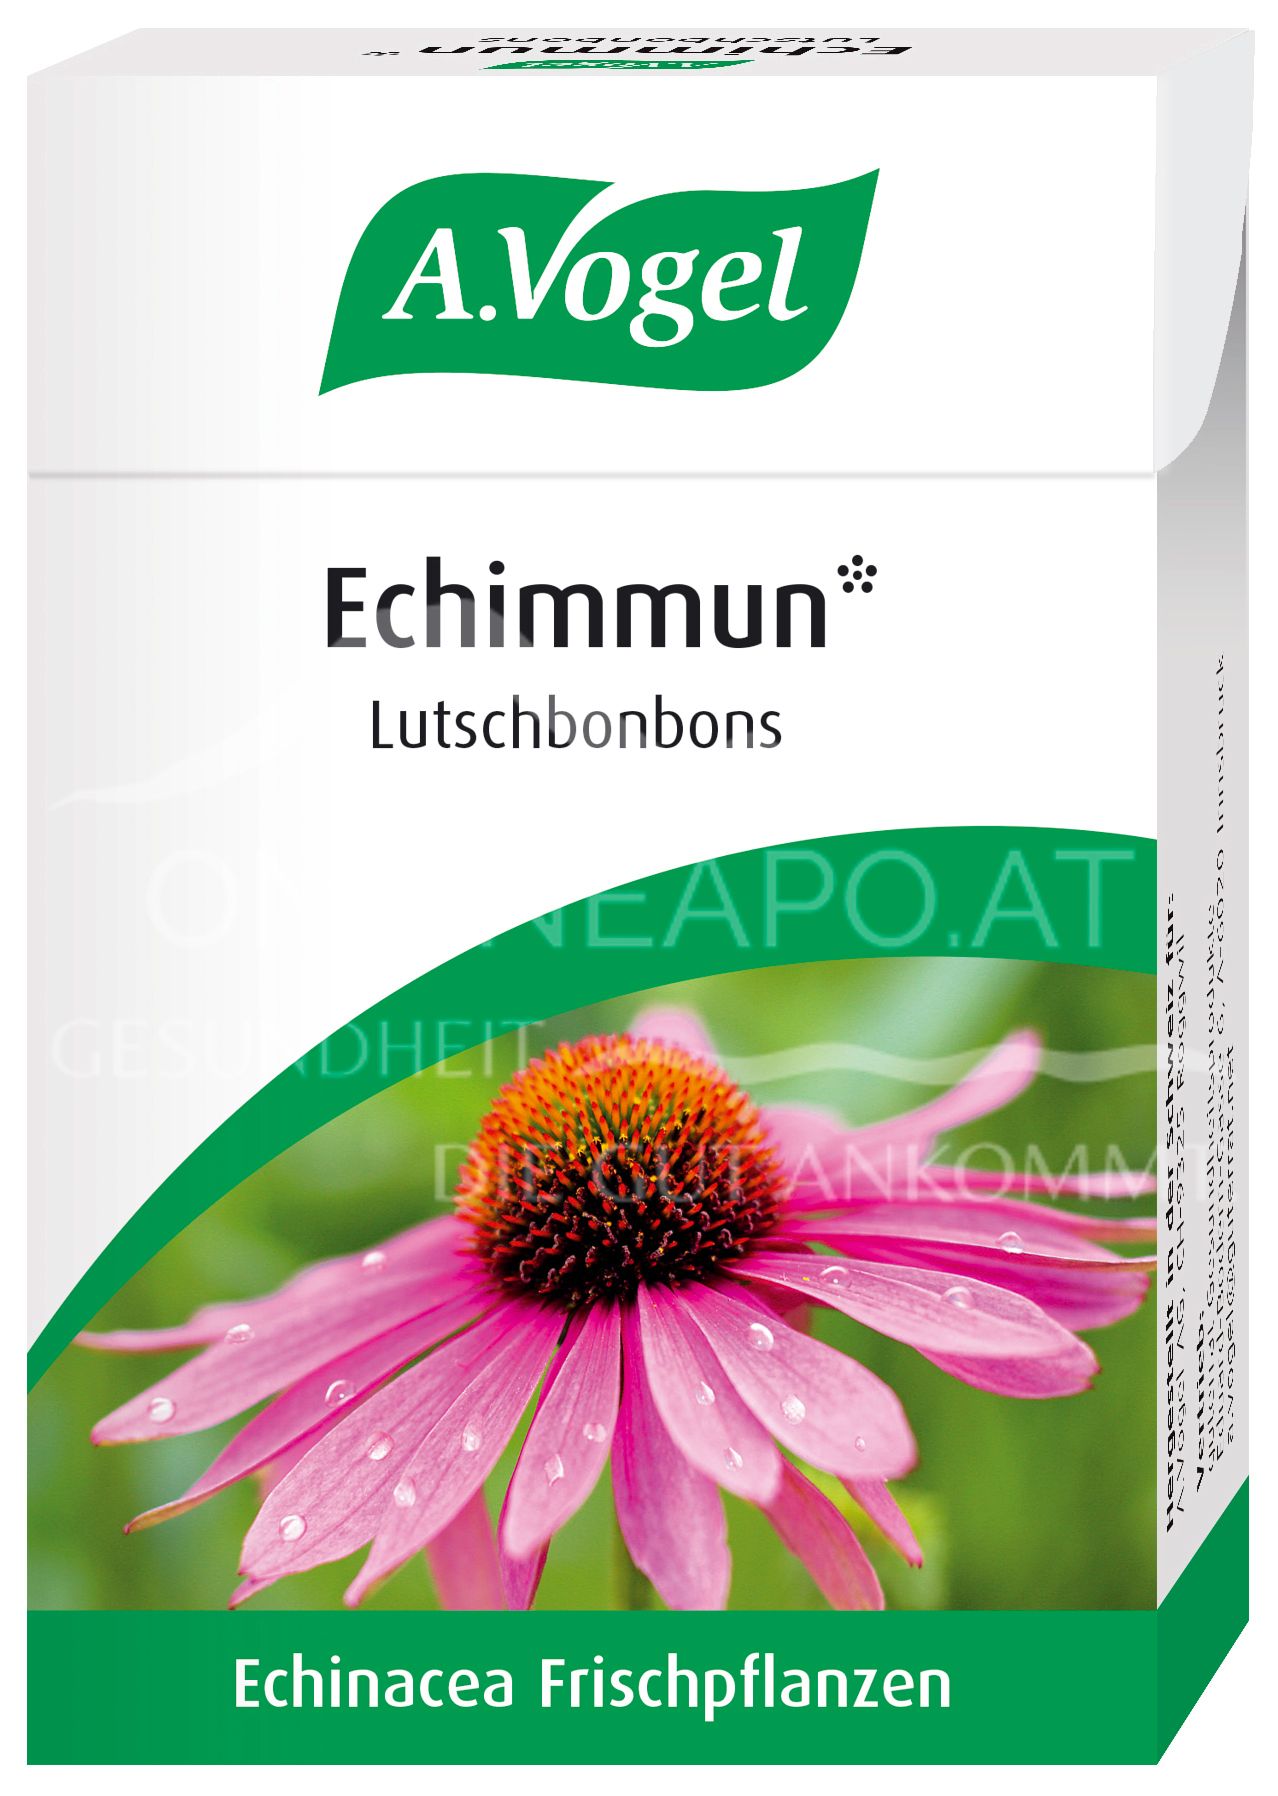 A.Vogel Echimmun* Lutschbonbons